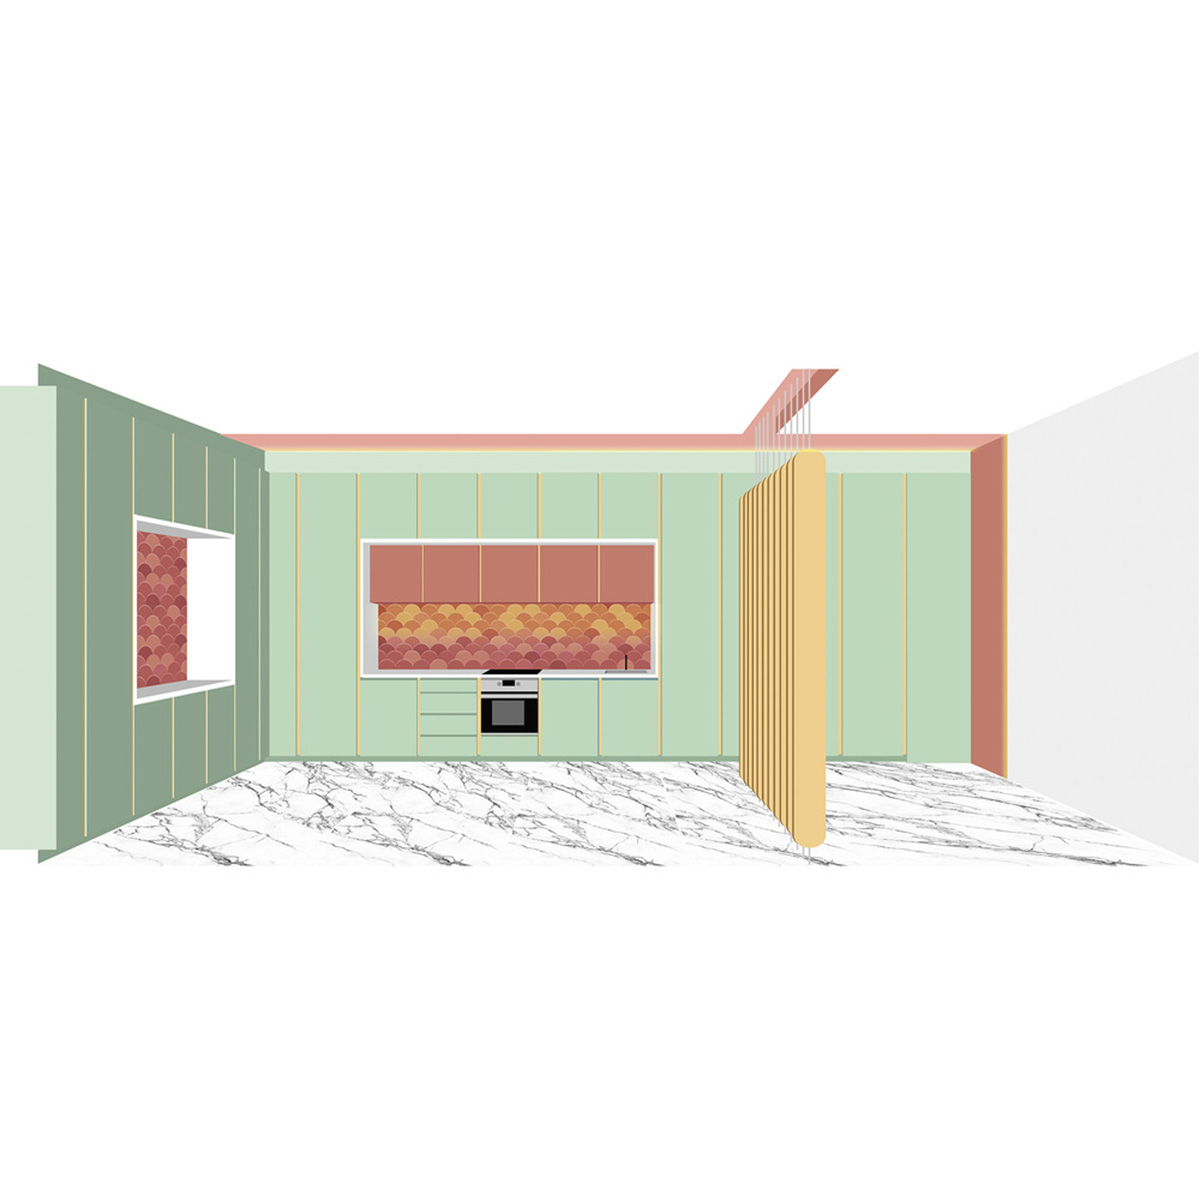 OIIIO Architecture превращает бывший магазин в квартиру с красочными шкафами в Мадриде 